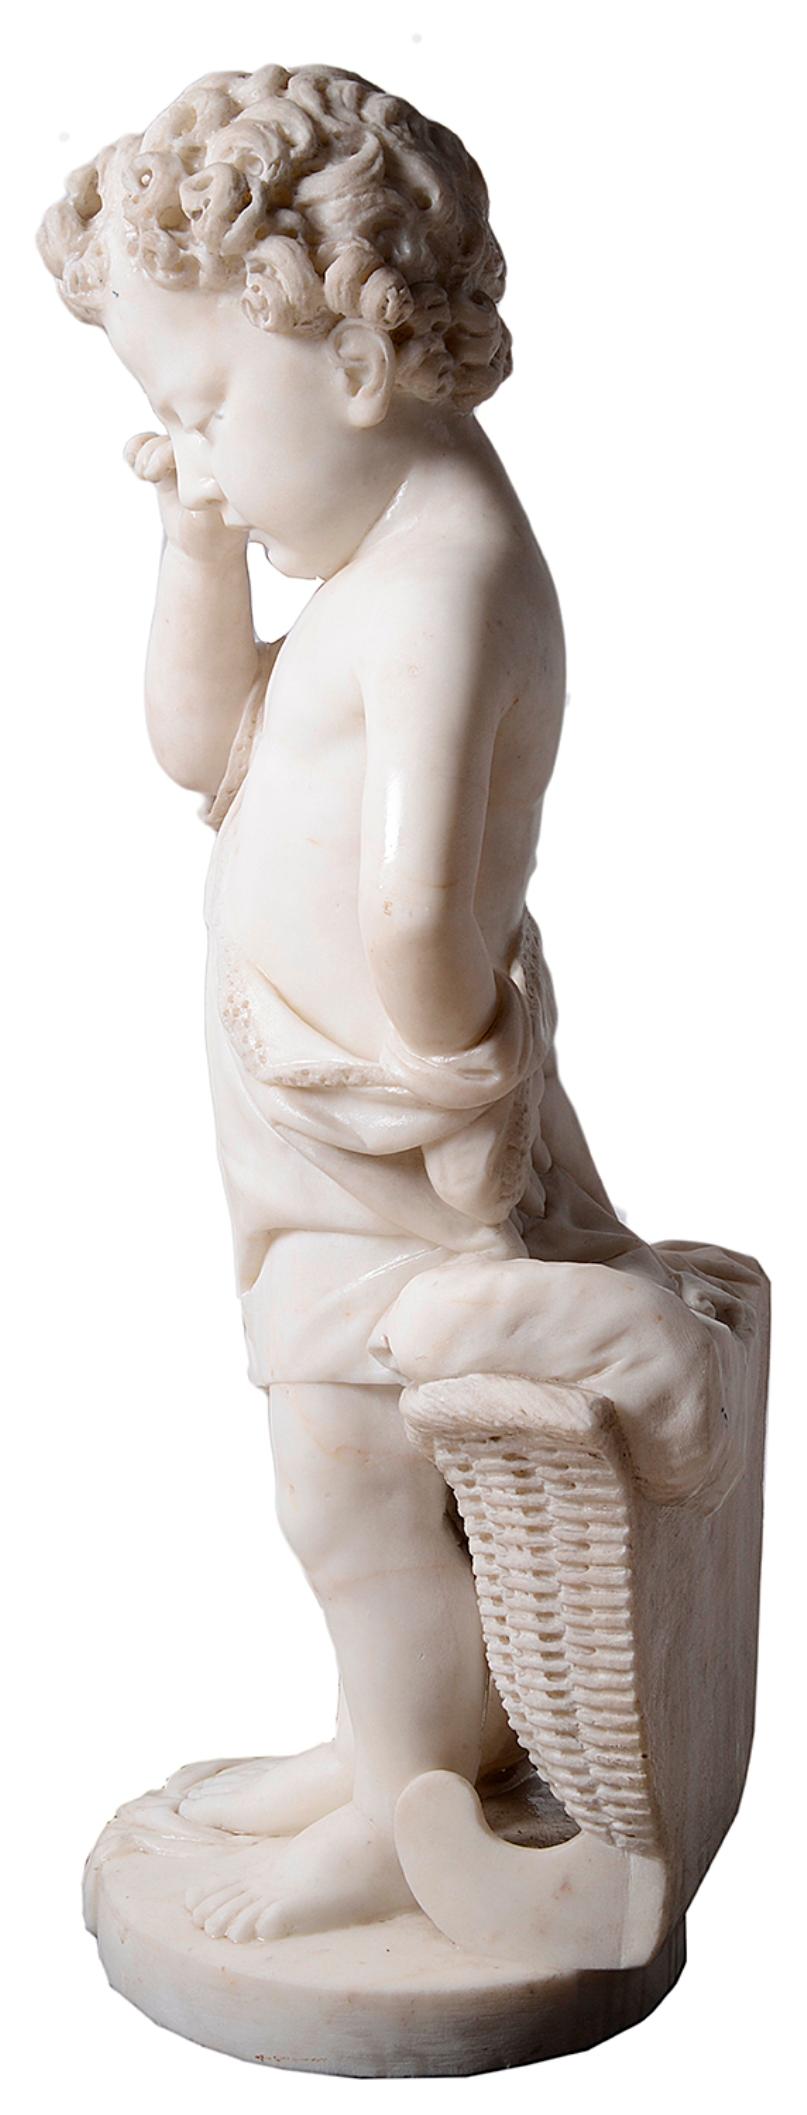 Statue italienne en marbre de très bonne qualité datant du milieu du XIXe siècle représentant un jeune enfant debout à côté d'un panier en osier, en train de pleurer.
Non signée.